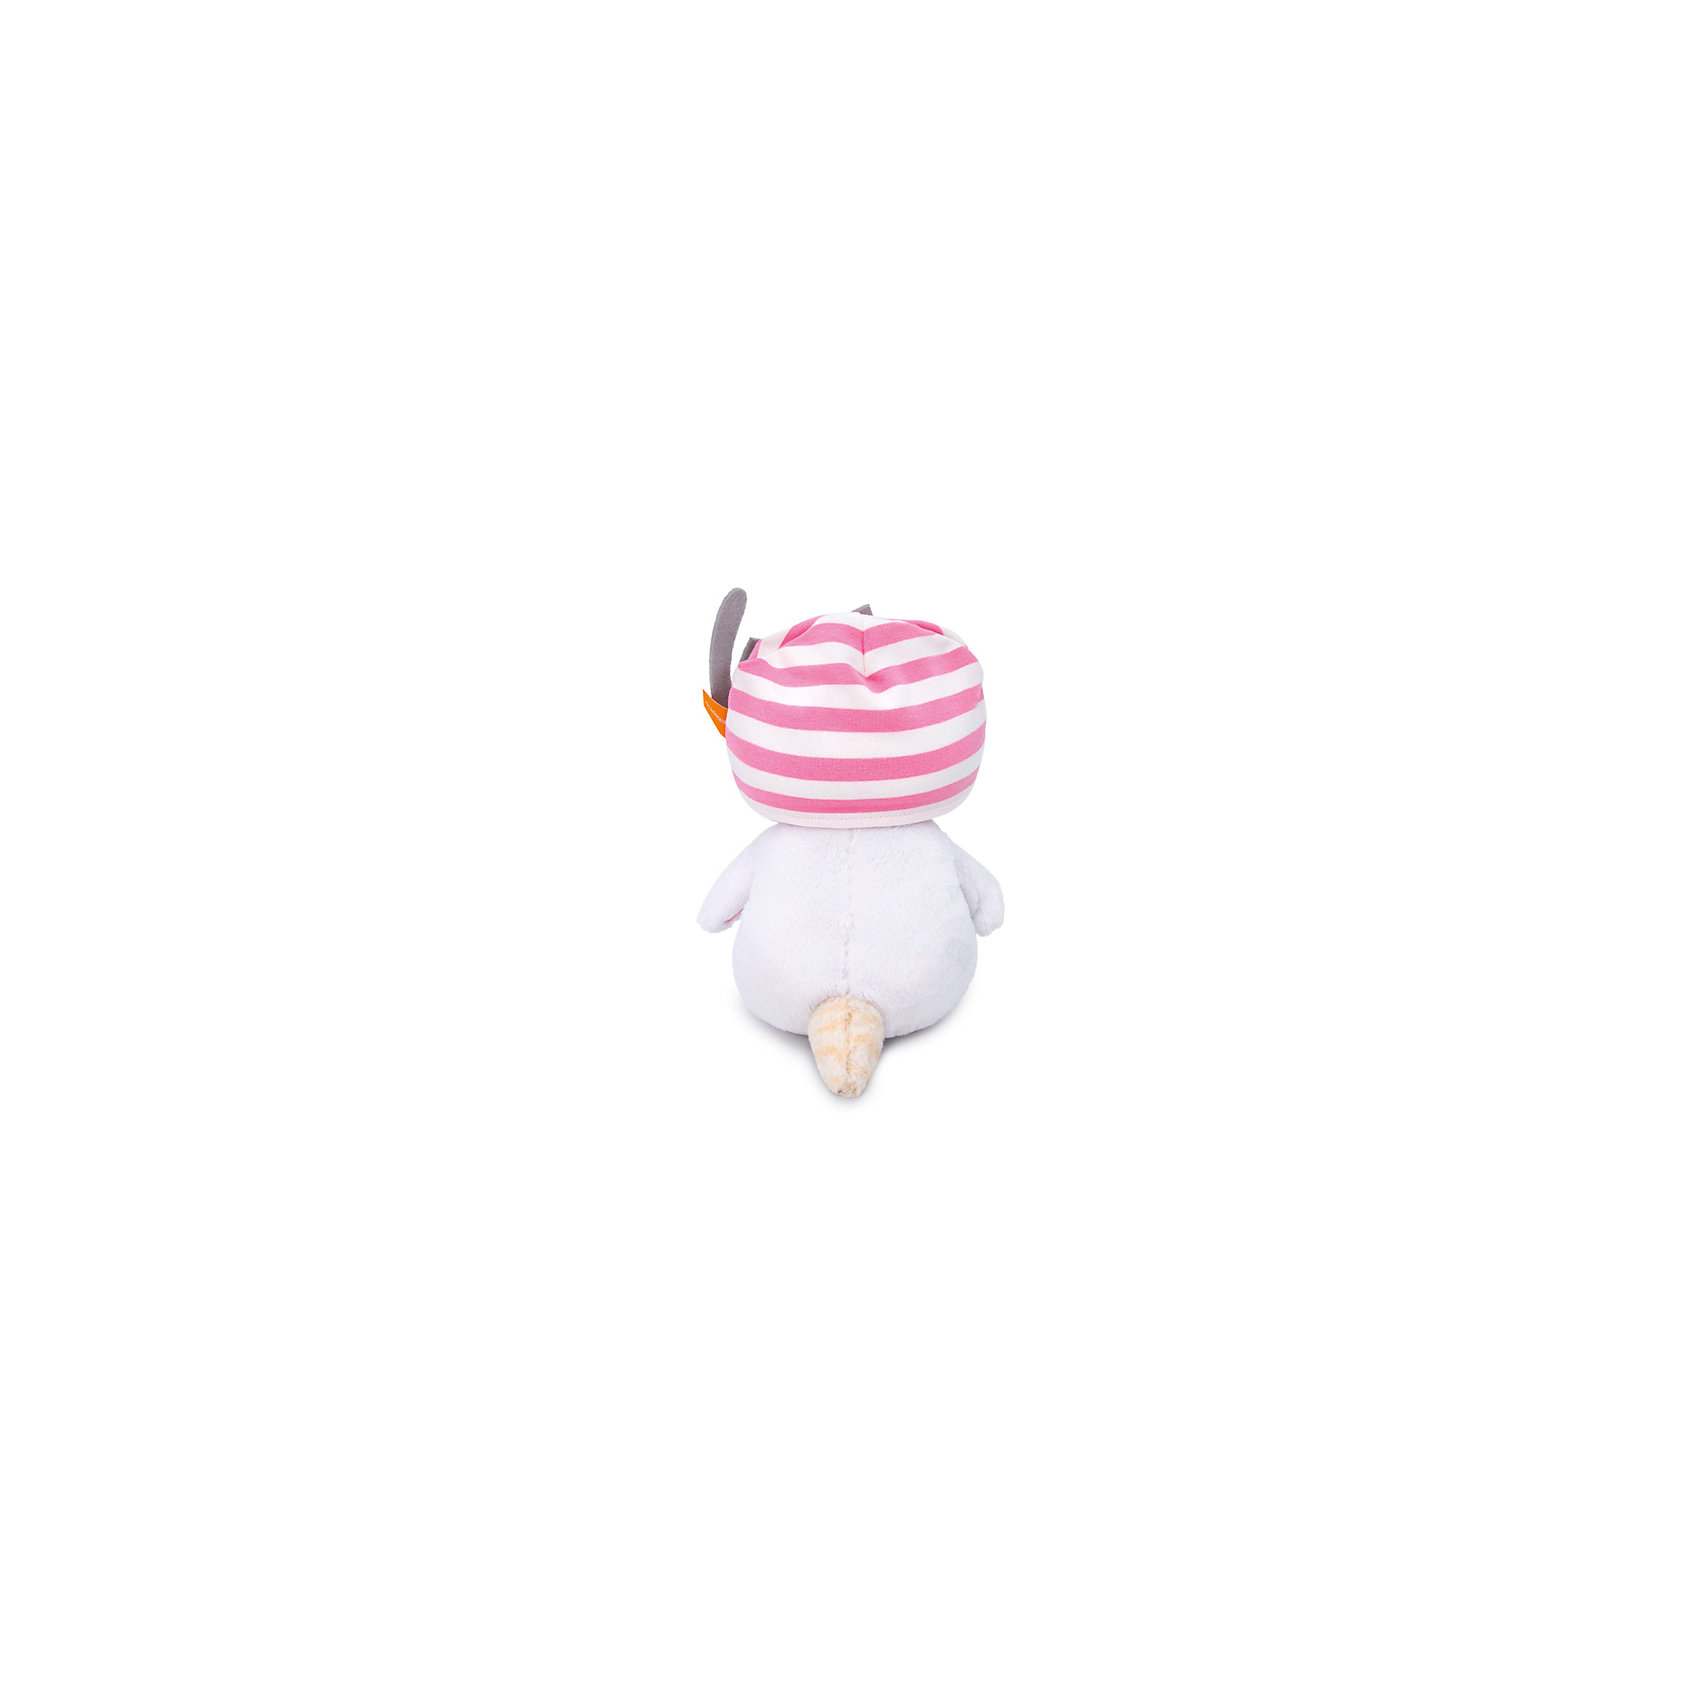 Мягкая игрушка Кошечка Ли-Ли Baby в шапочке с кошечкой, 20 см Budi Basa 12977968